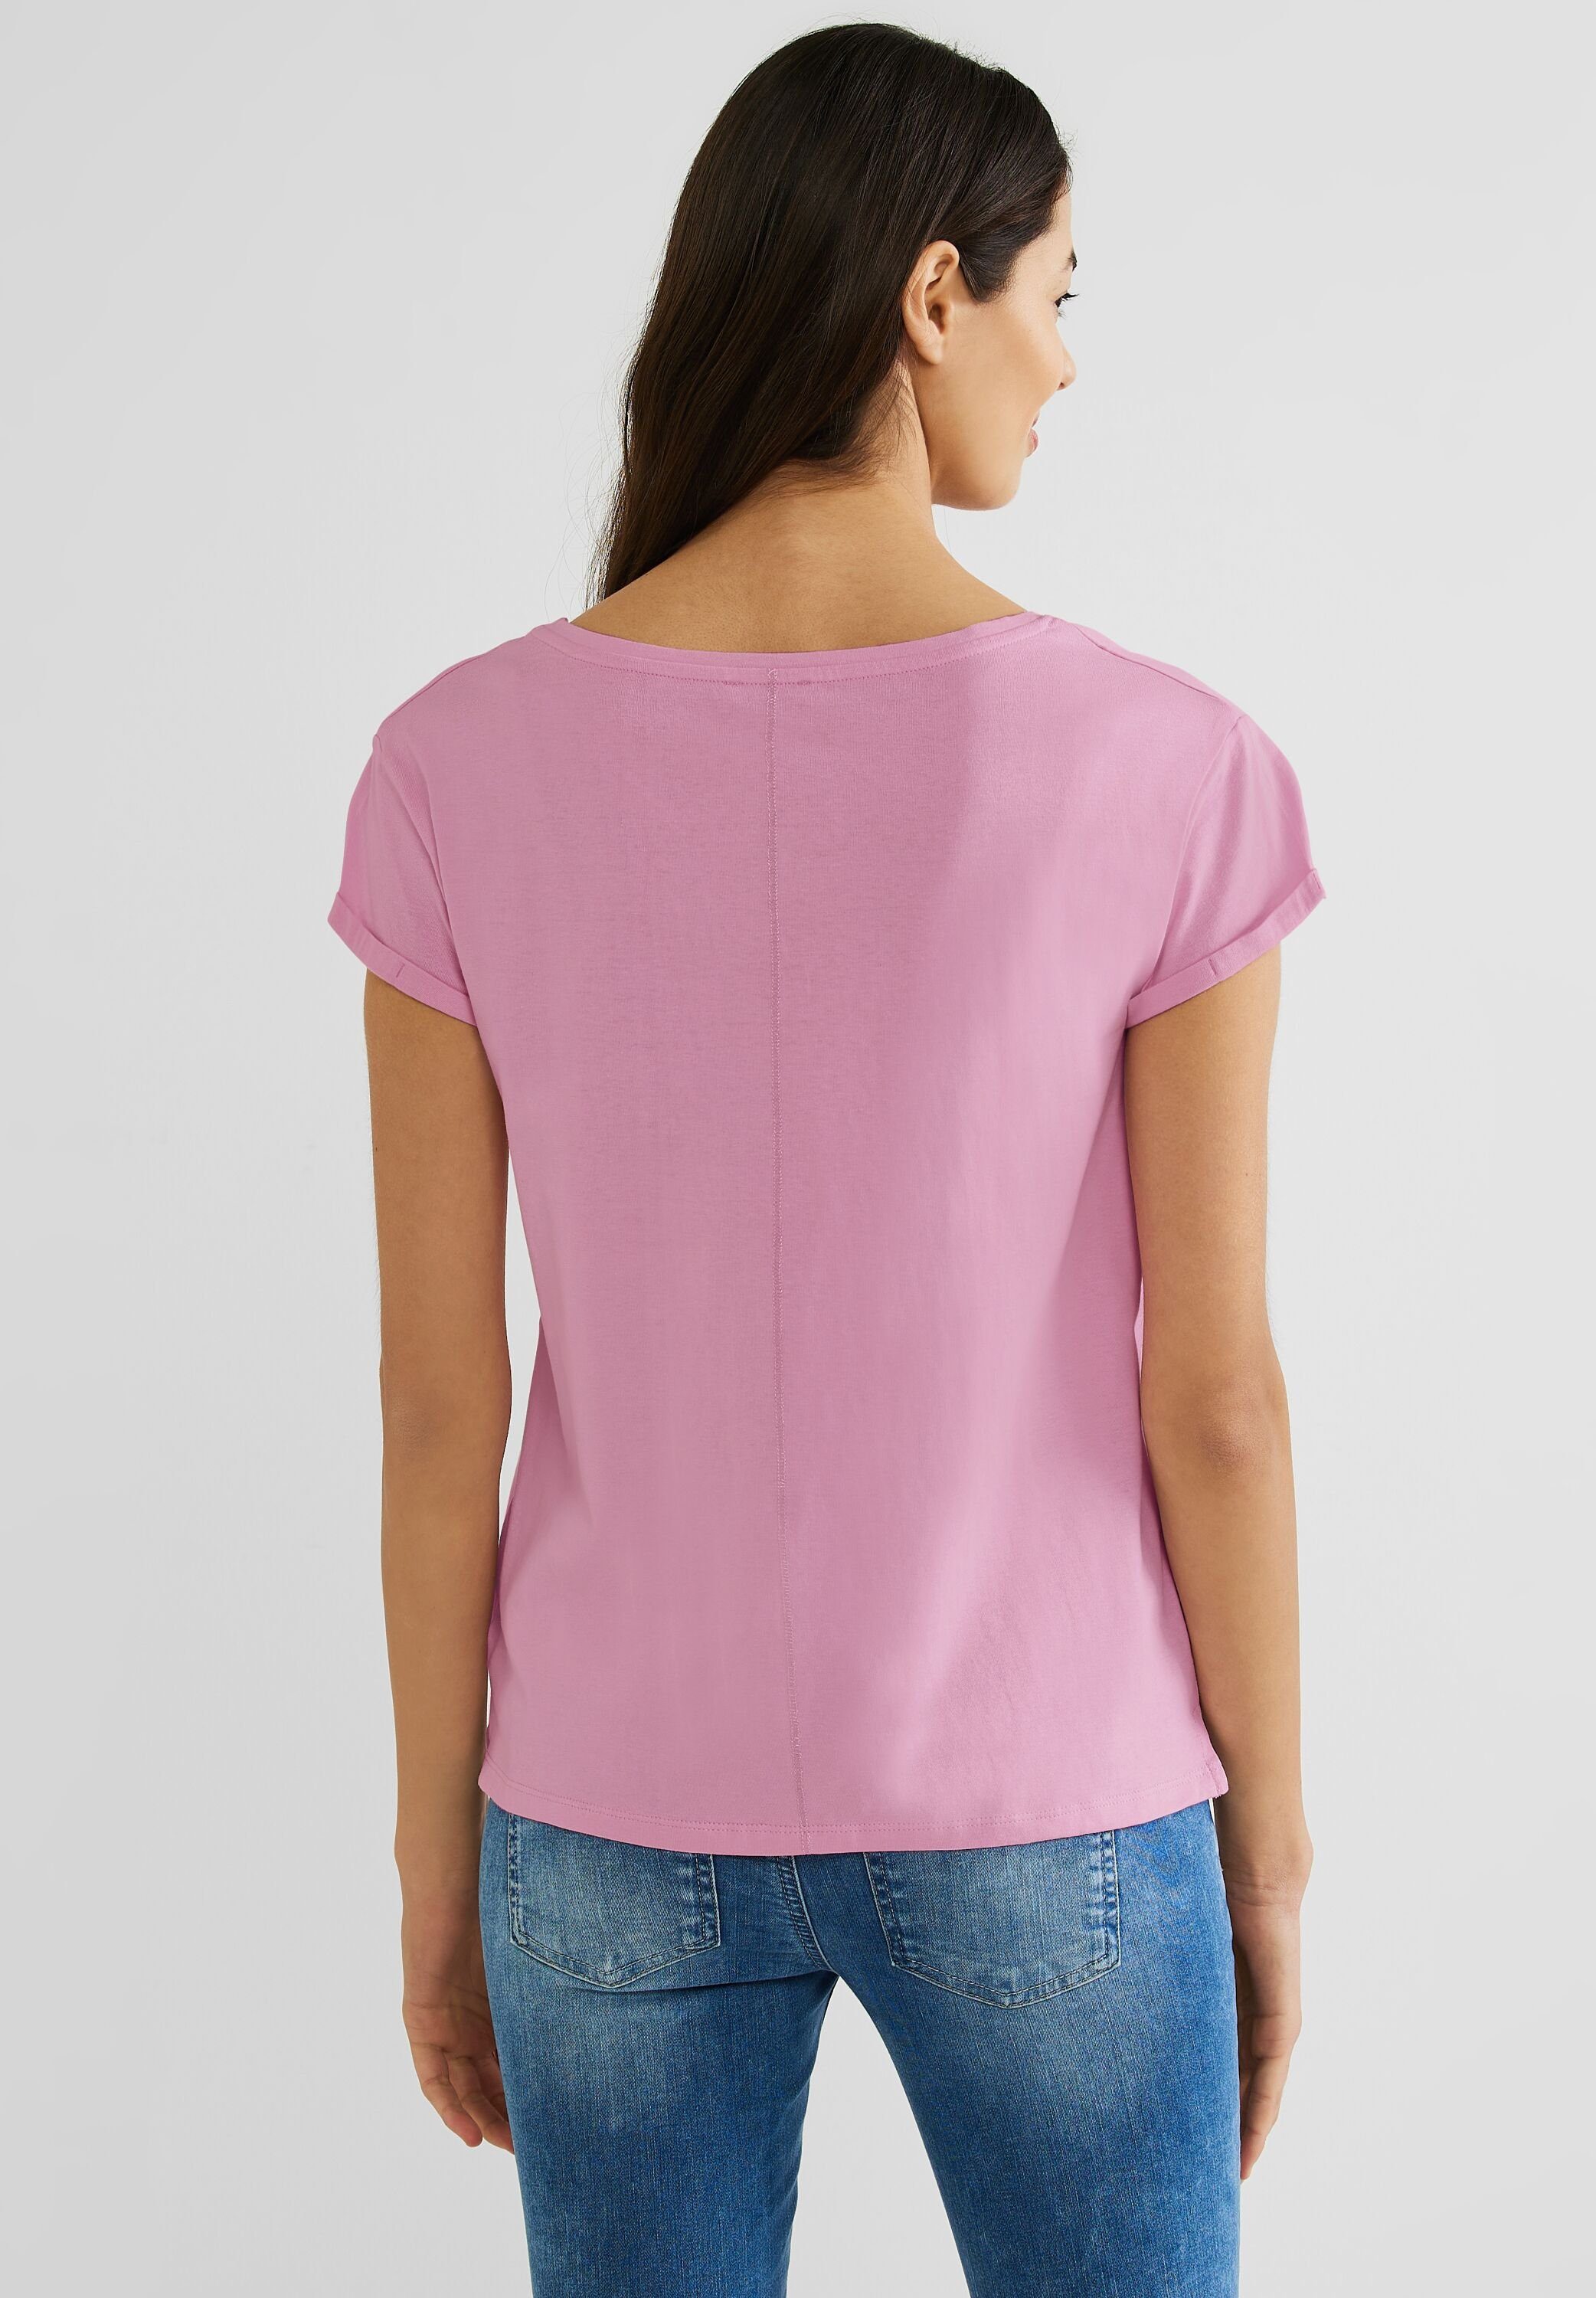 ONE Baumwolle T-Shirt aus rose STREET reiner wild